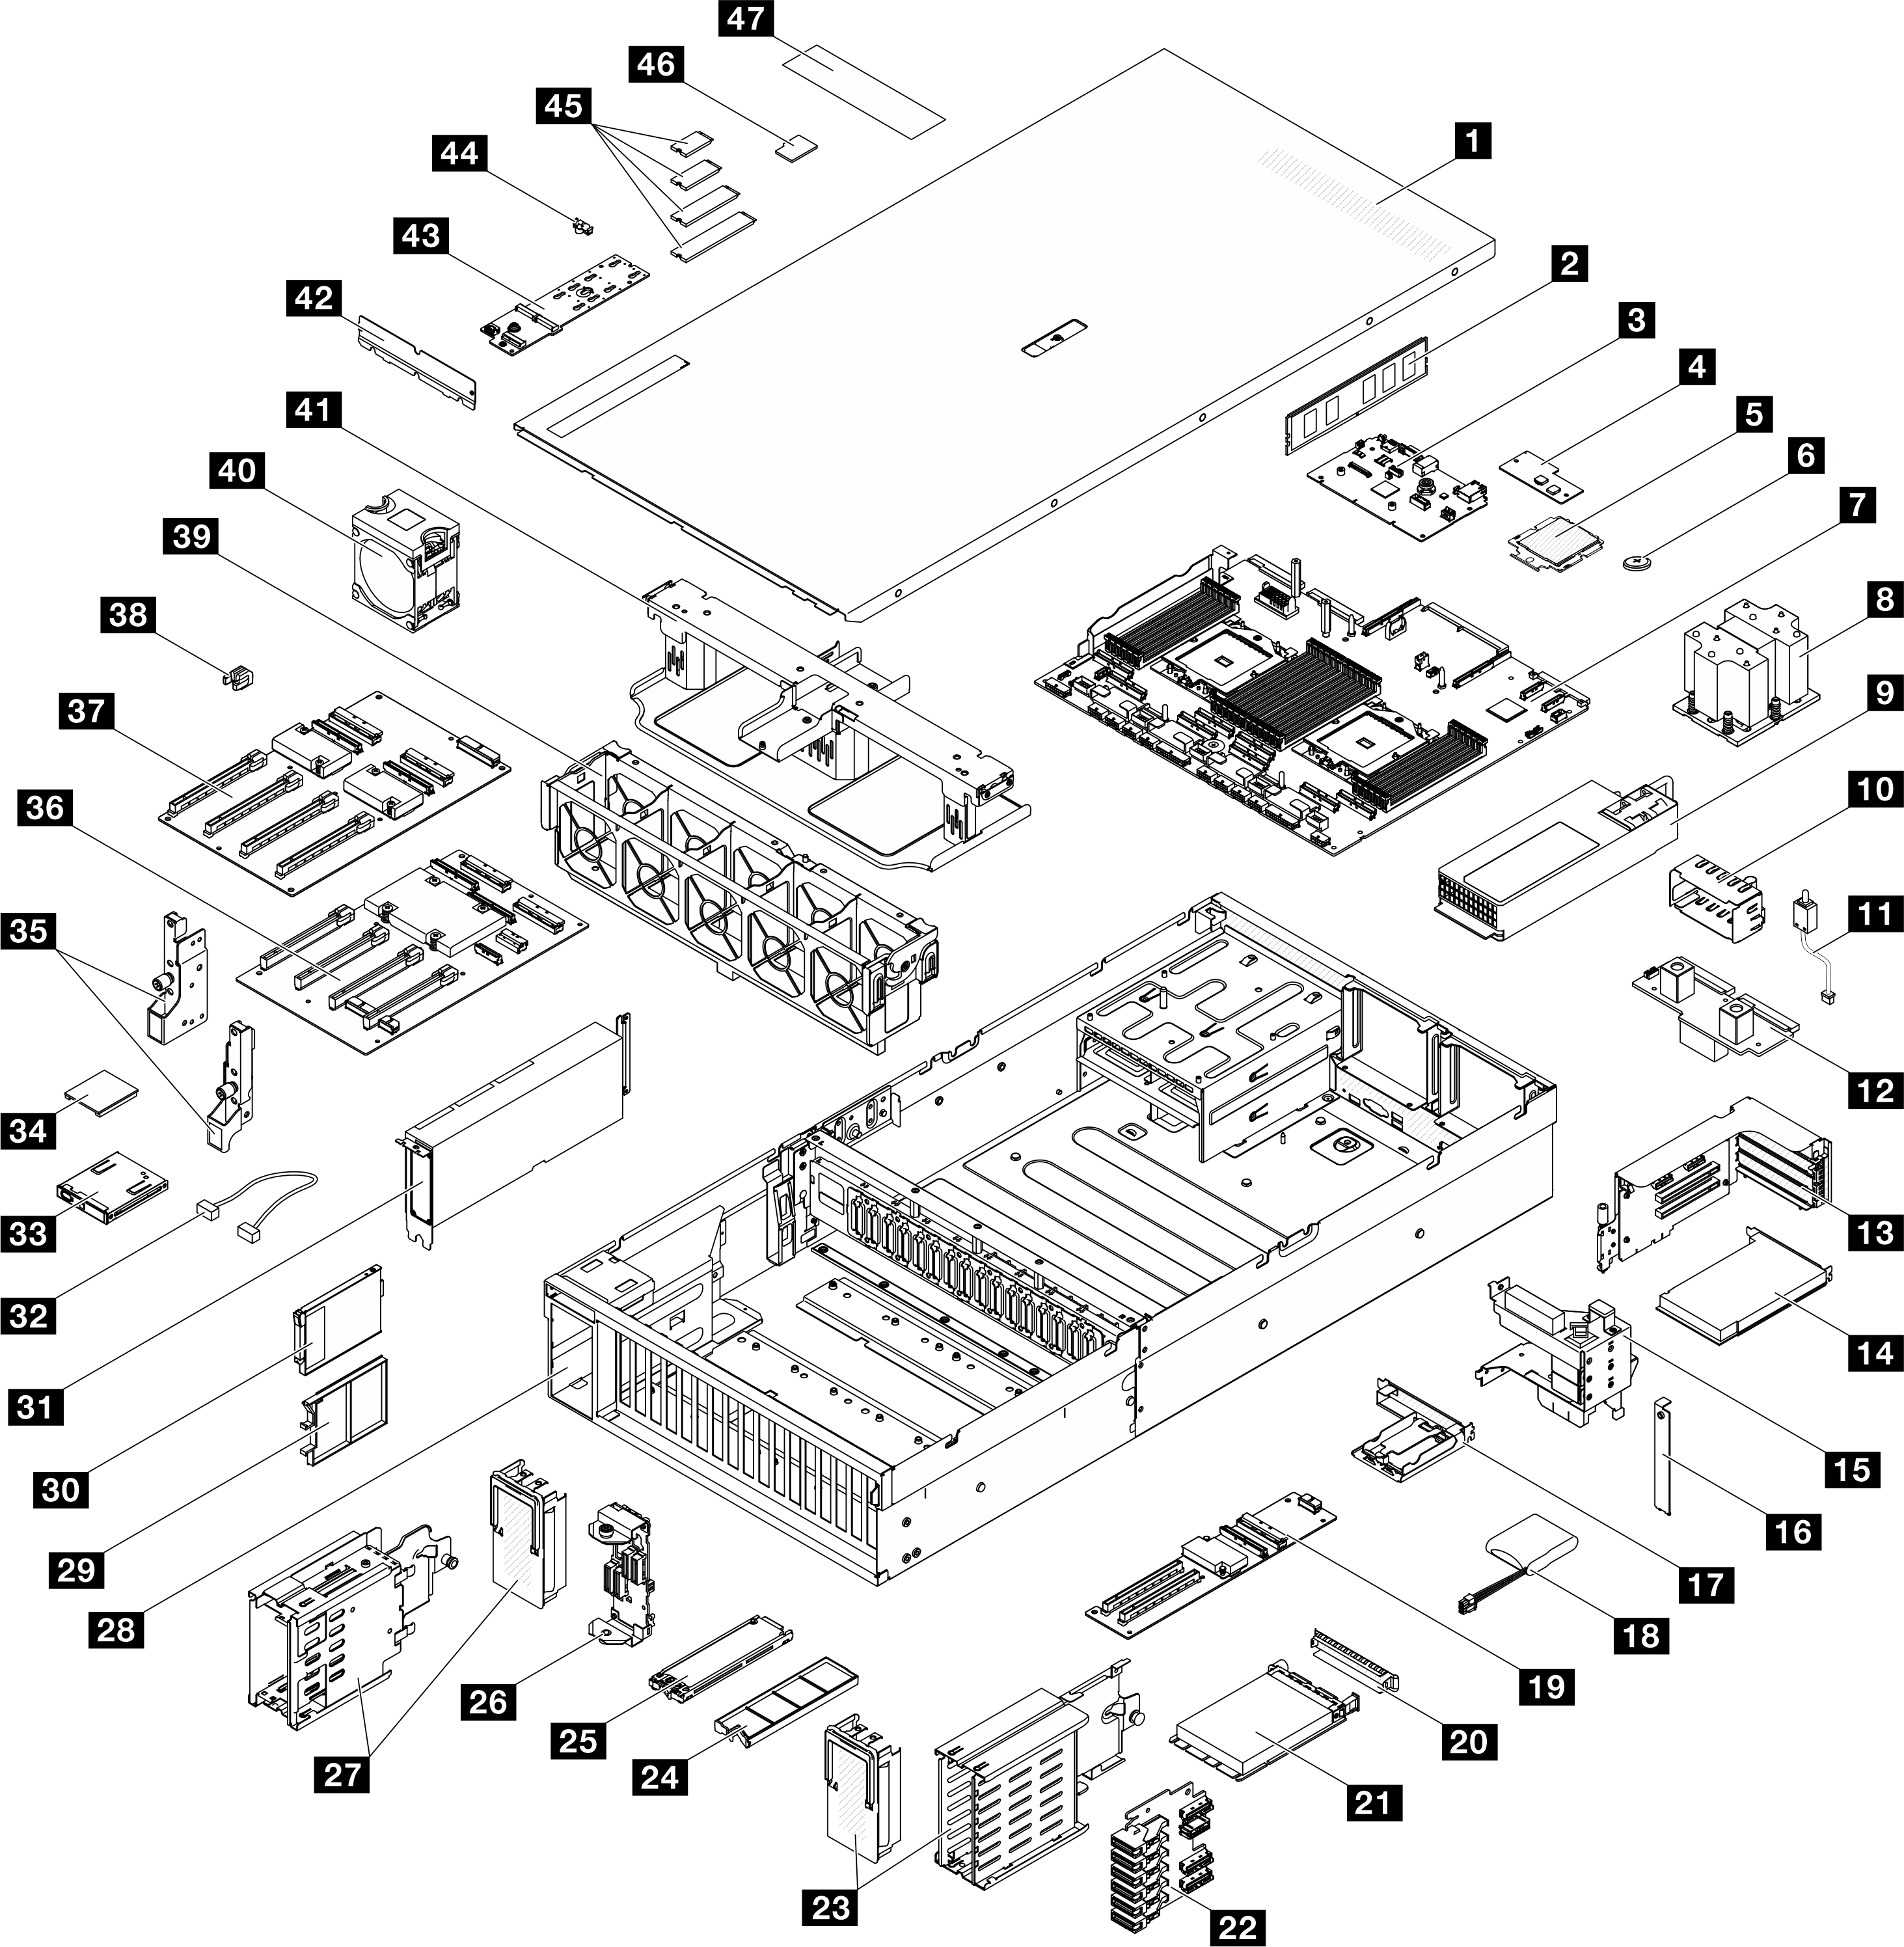 Server components of the Modèle de GPU 8-DW